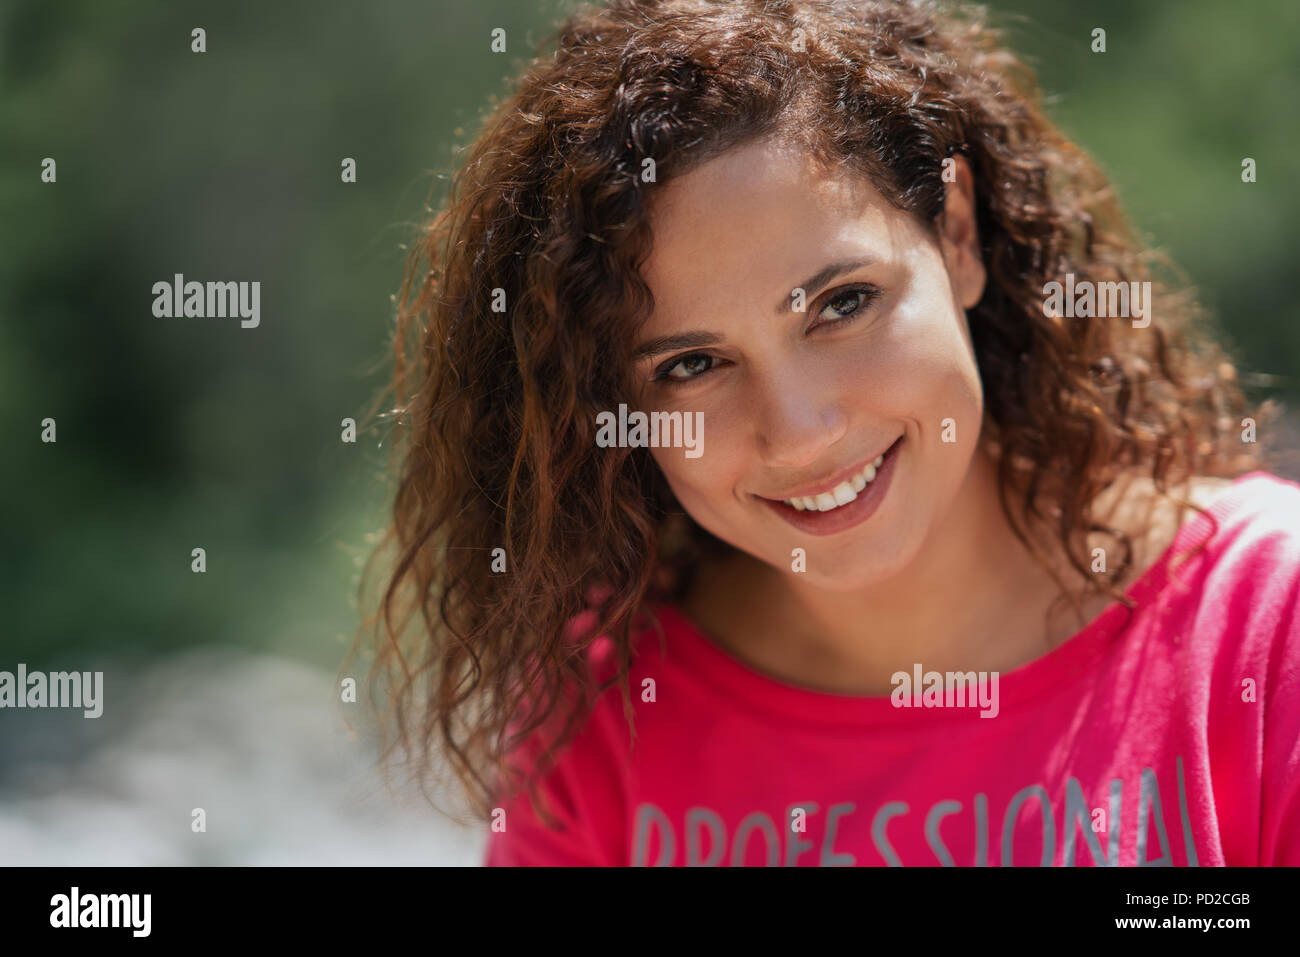 Close Up retrato de un alegre rizado joven sonriente al aire libre. Foto de stock